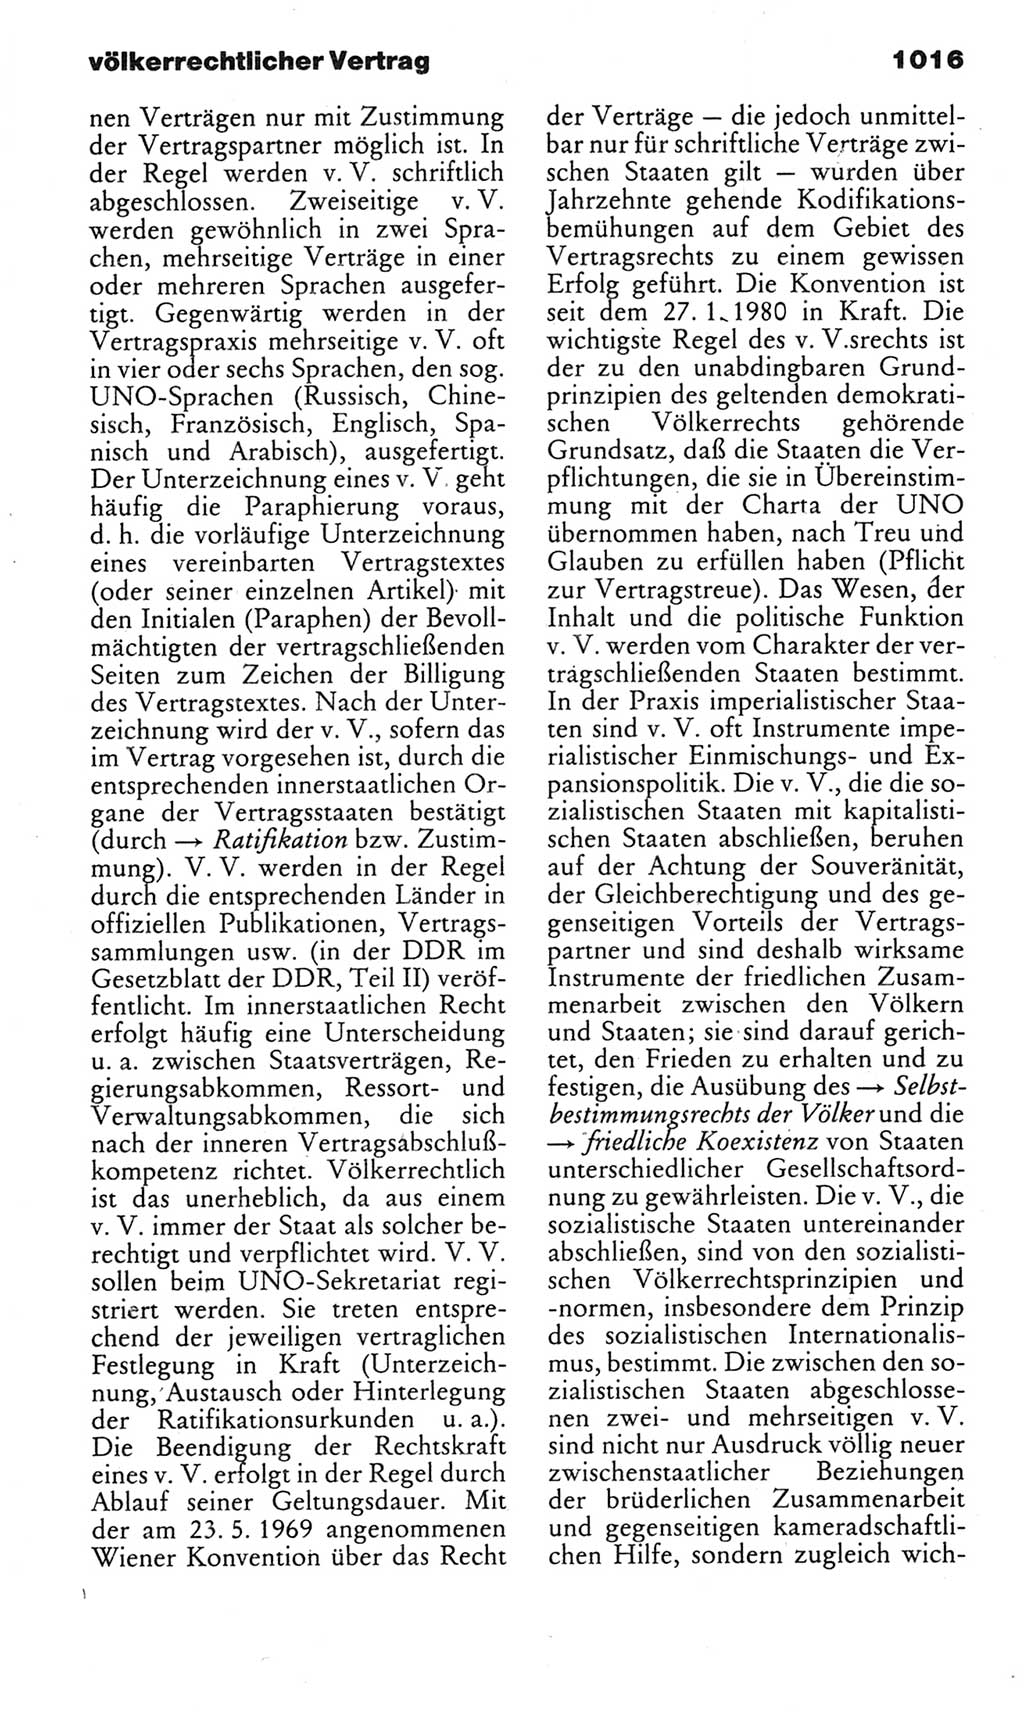 Kleines politisches Wörterbuch [Deutsche Demokratische Republik (DDR)] 1983, Seite 1016 (Kl. pol. Wb. DDR 1983, S. 1016)